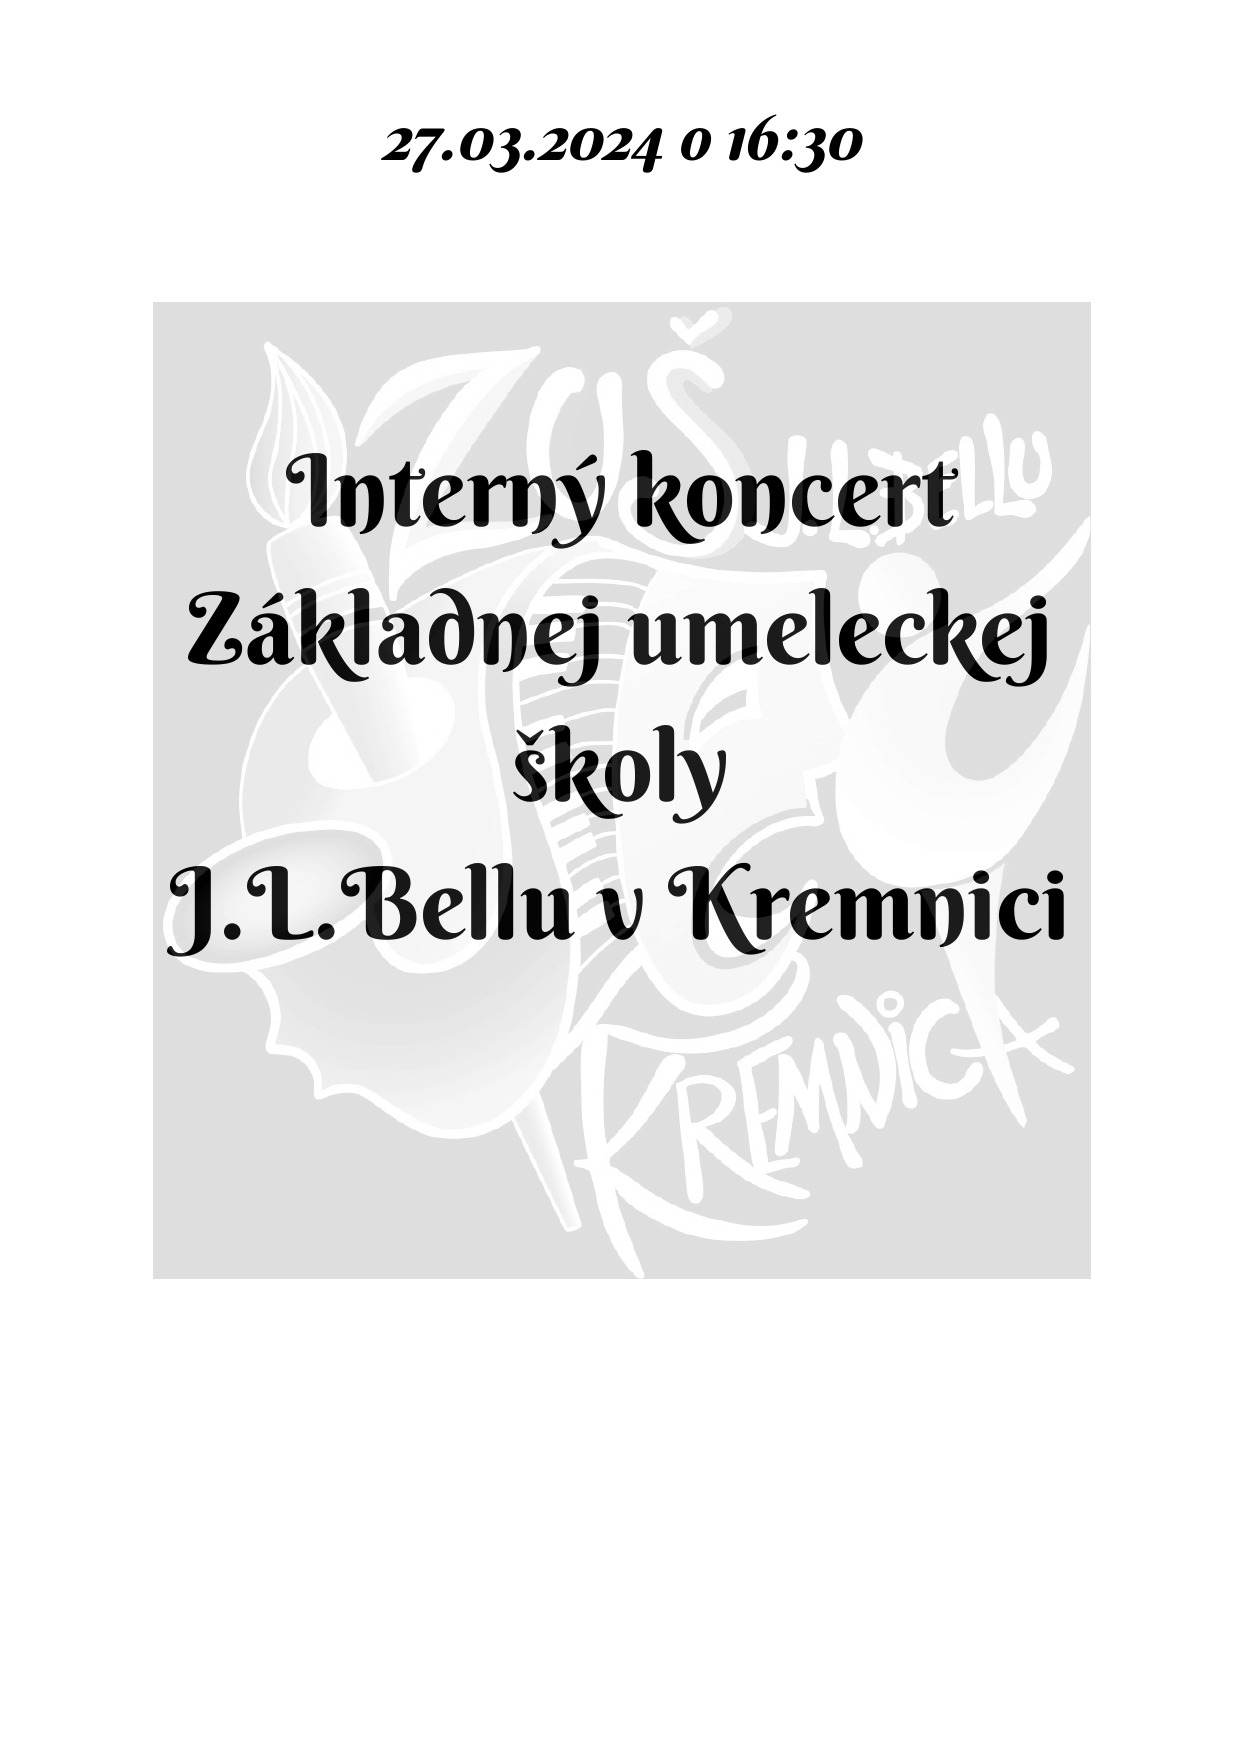 Pozvánka na interný koncert dnes 27.03. o 16:30 v sále ZUŠ, alebo online - Obrázok 1